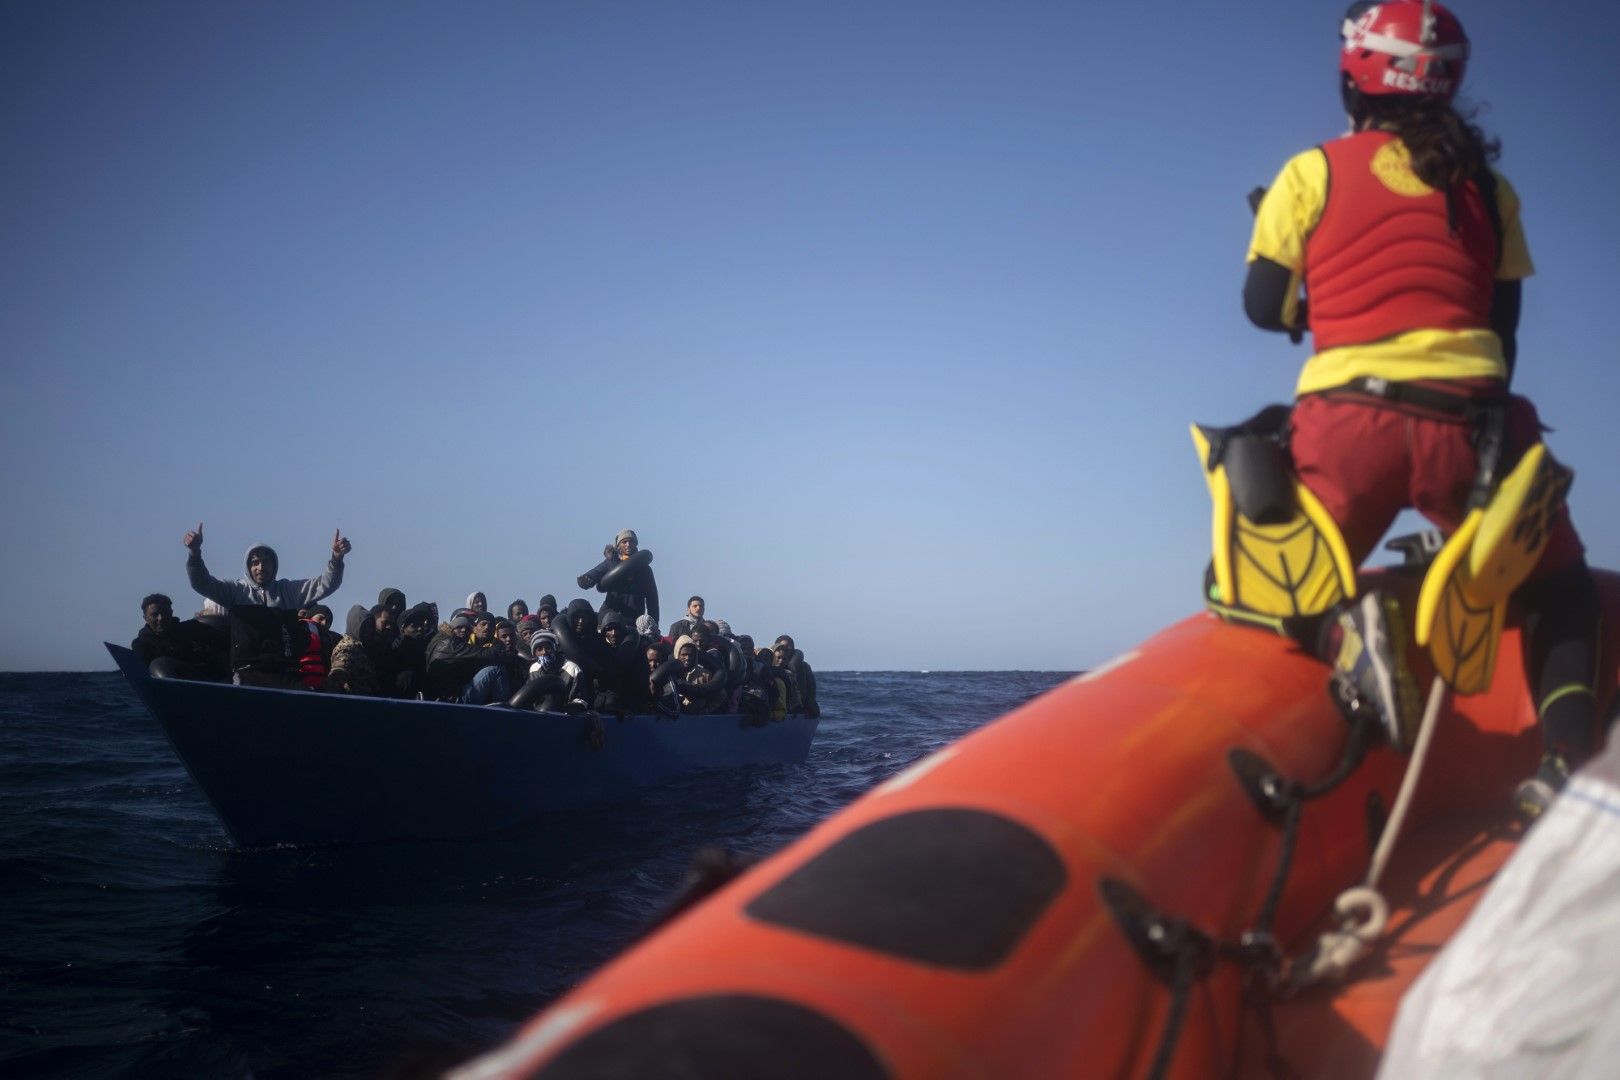 Представители на НПО Оупън Армс помагат на мигранти от Еритрея, Судан, Сирия, Египет в Средиземно море